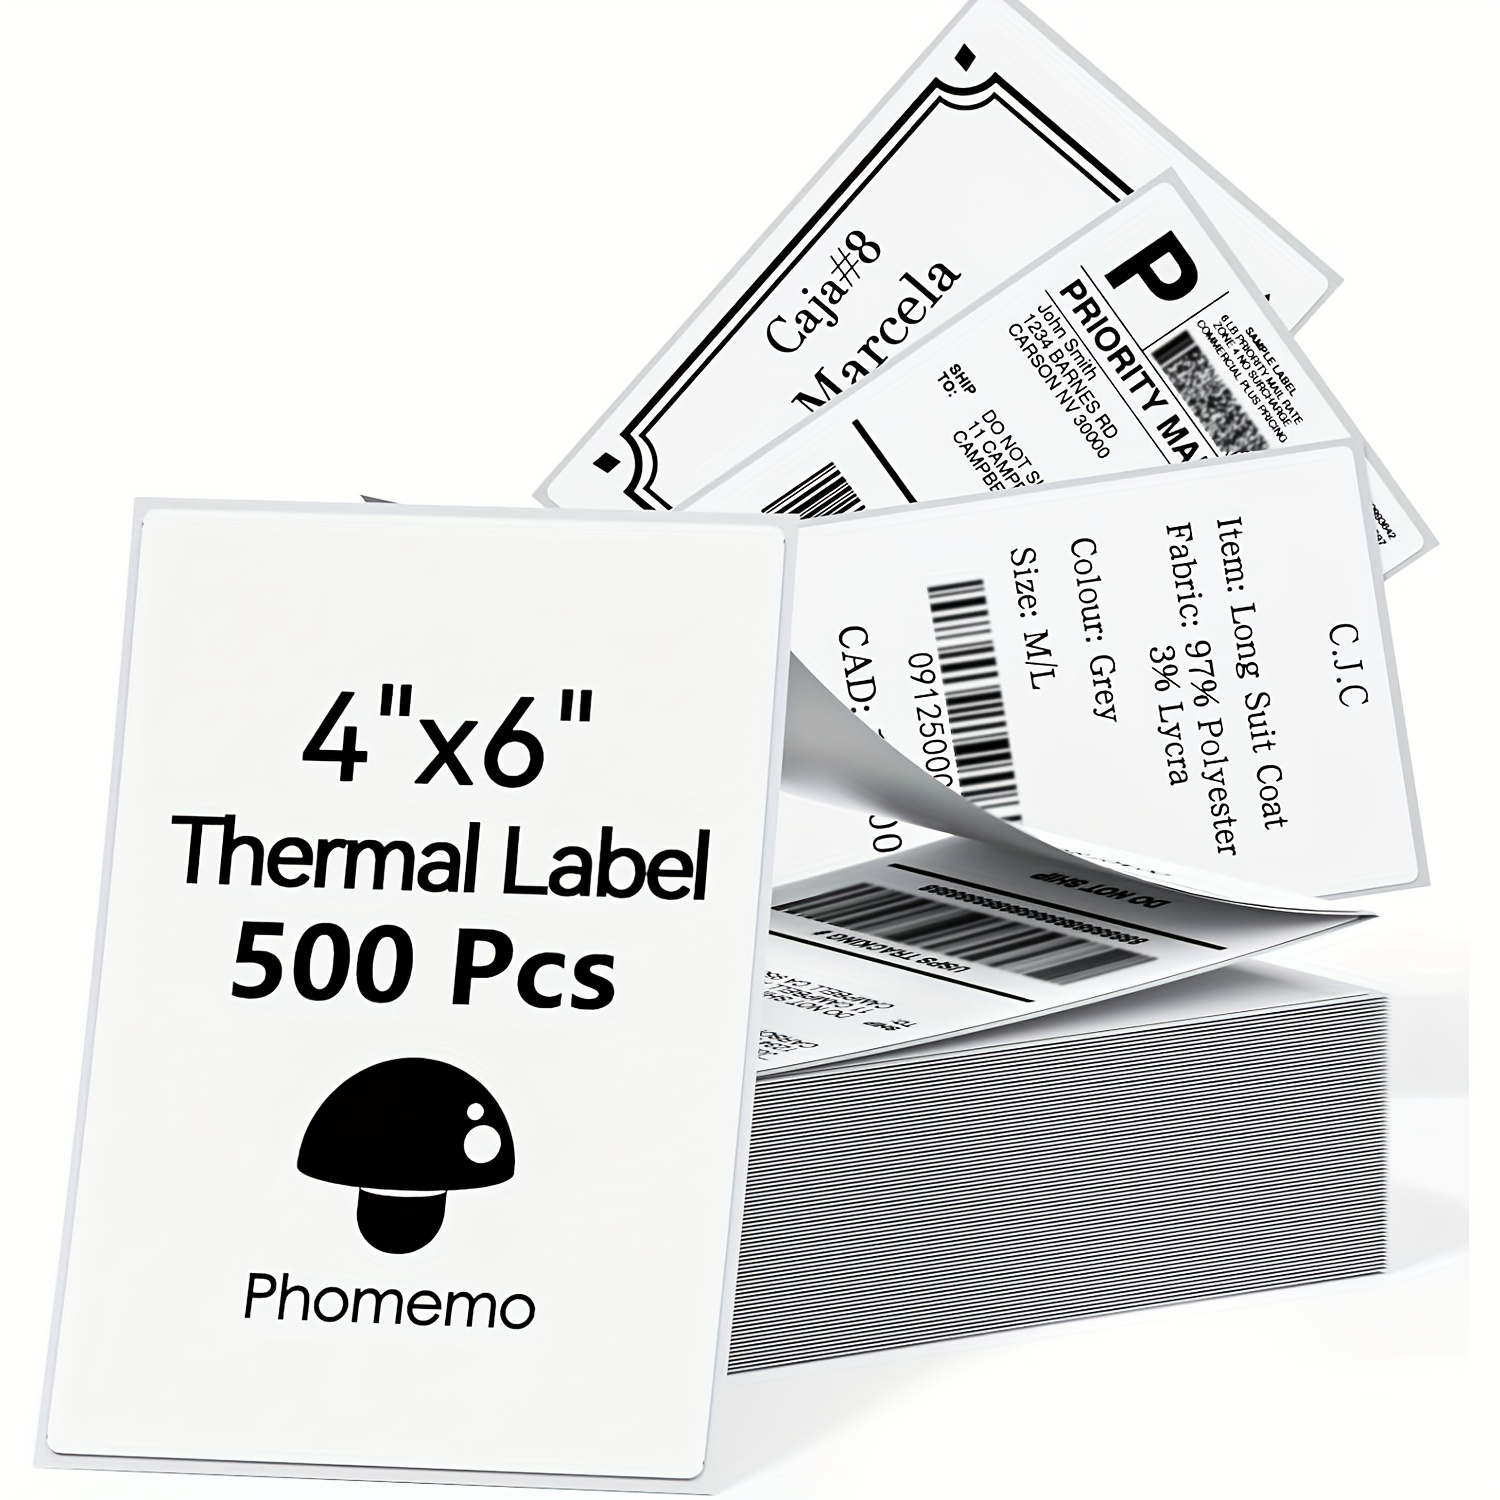 MUNBYN Monochrome Imprimante d'étiquettes Thermique 4x6, Code à